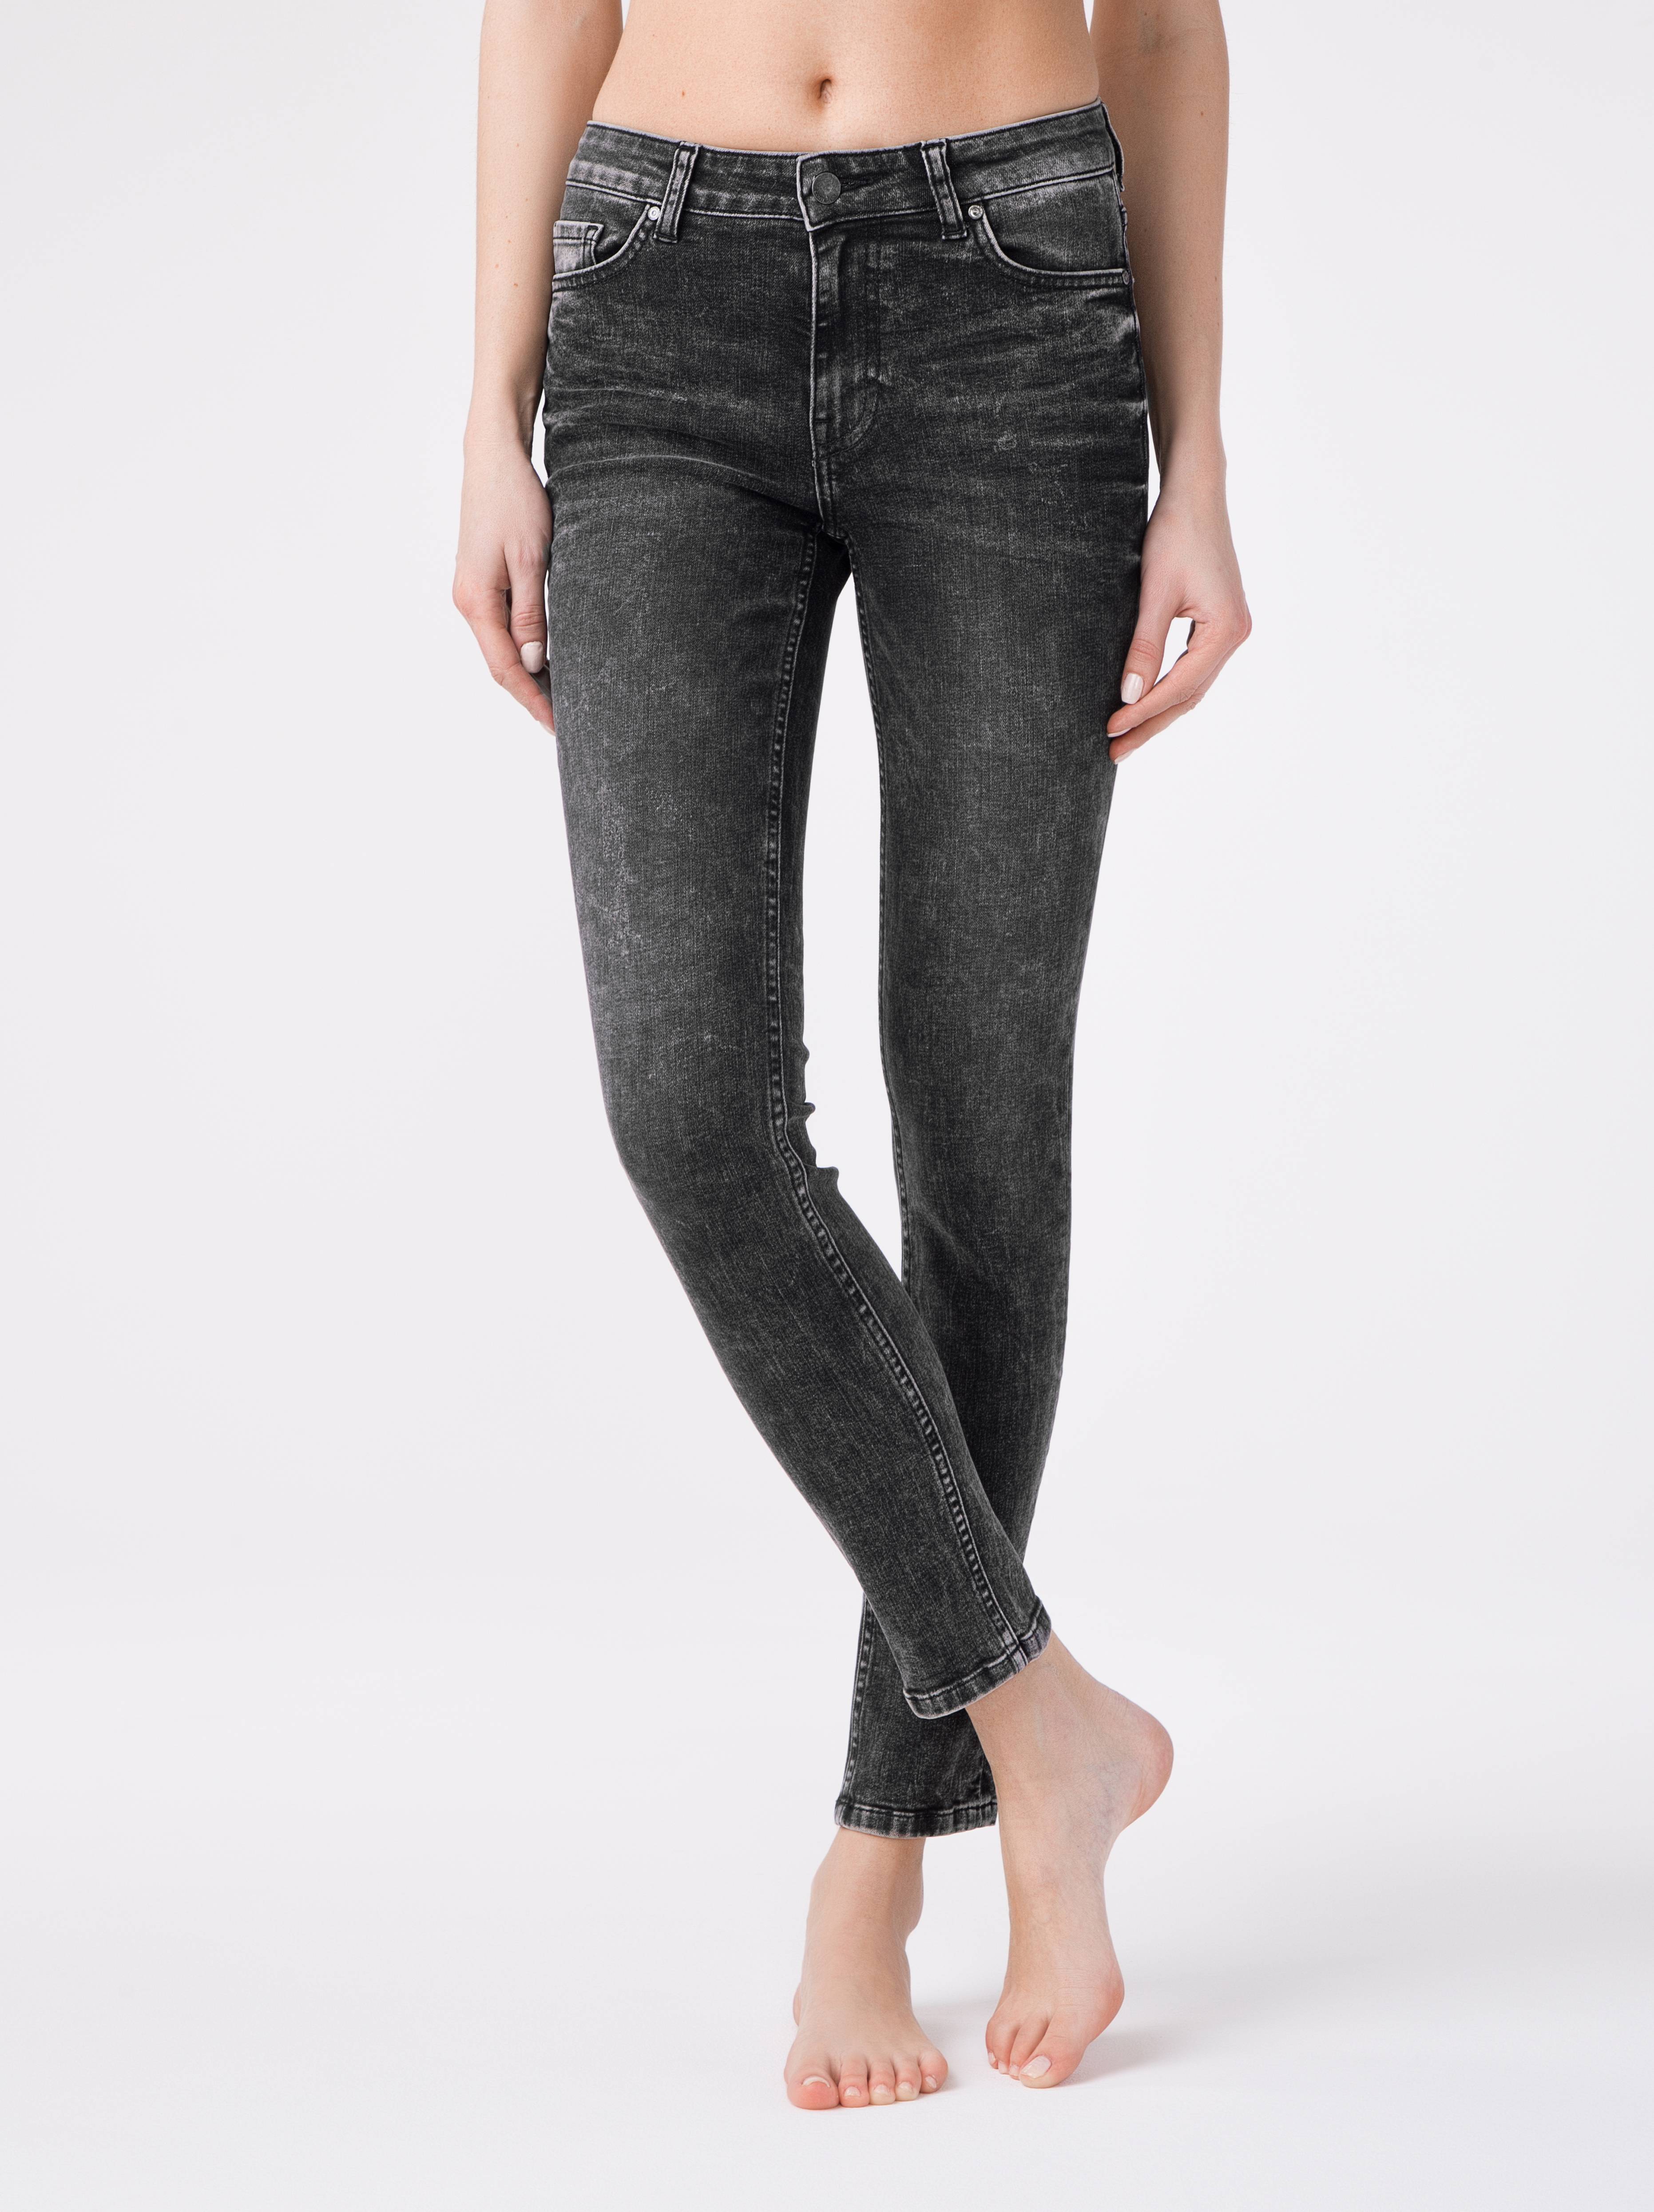 Моделирующие eco-friendly джинсы skinny со средней посадкой CON-173 Conte ⭐️, цвет washed black, размер 164-102 - фото 1